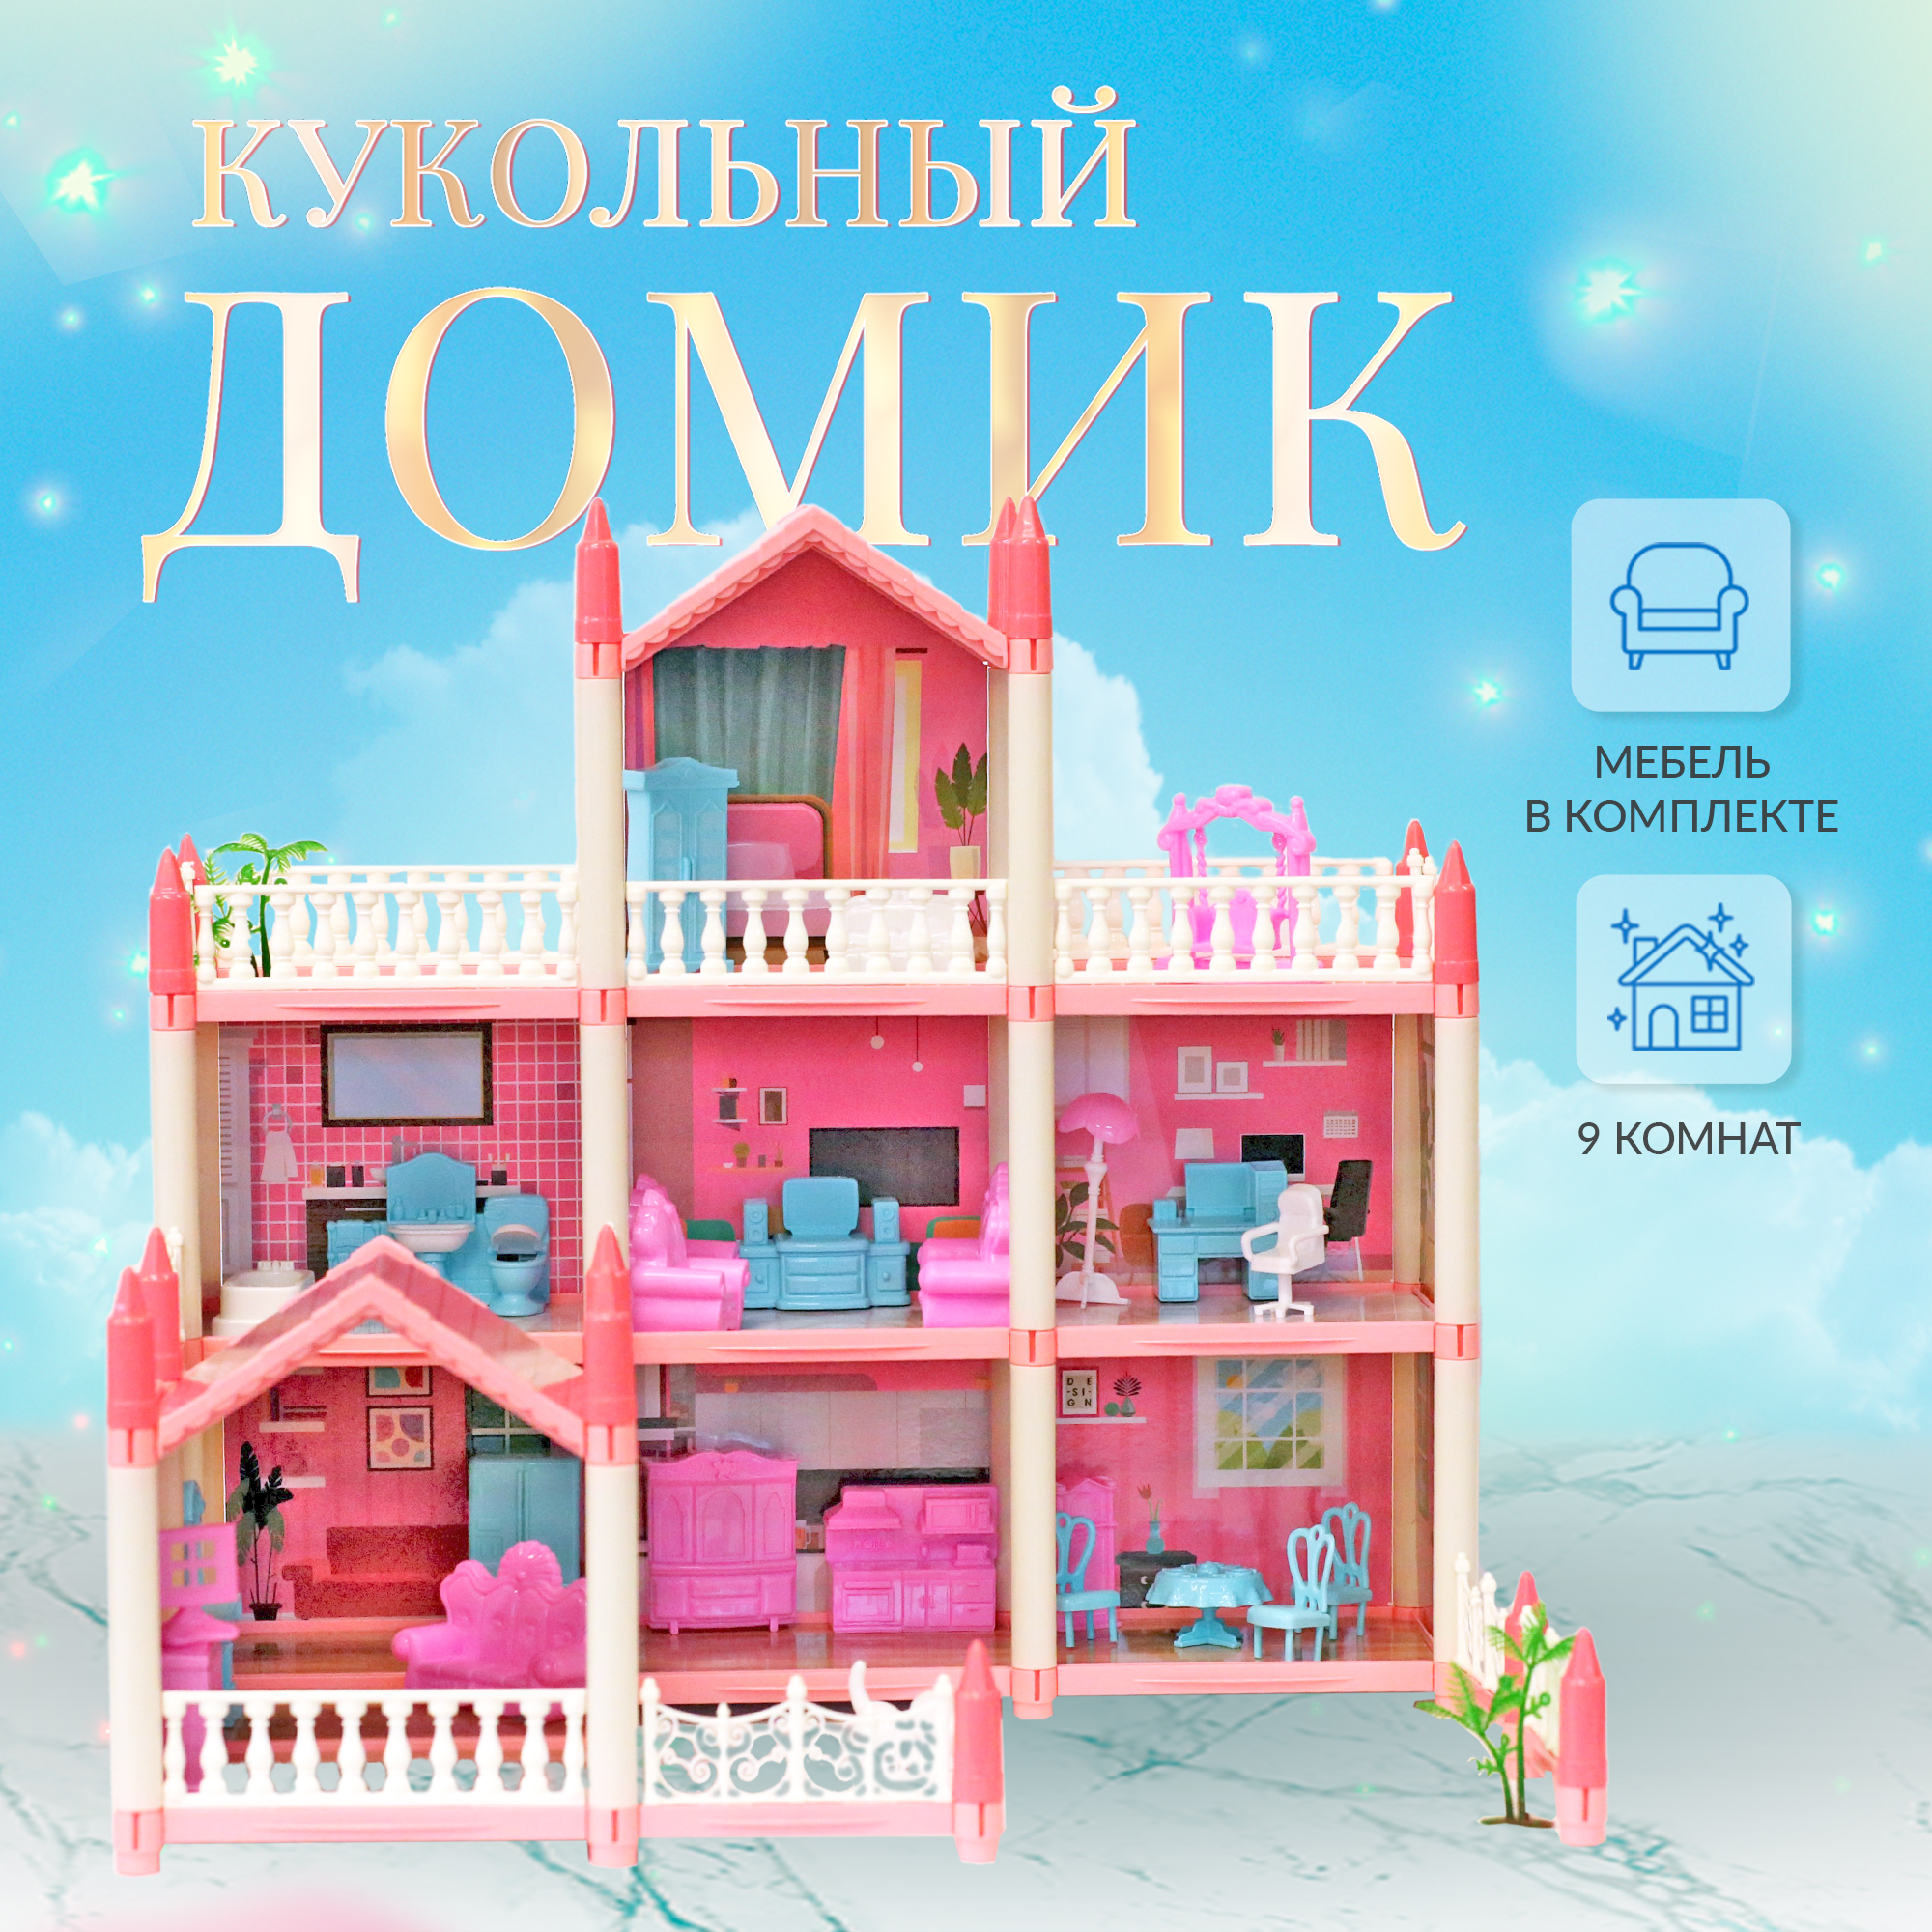 Сборный кукольный домик: 3 этажа, 8 комнат, мебель, аксессуары, кукла, питомец 11500017 rezark сборная модель кукольный домик приморская вилла